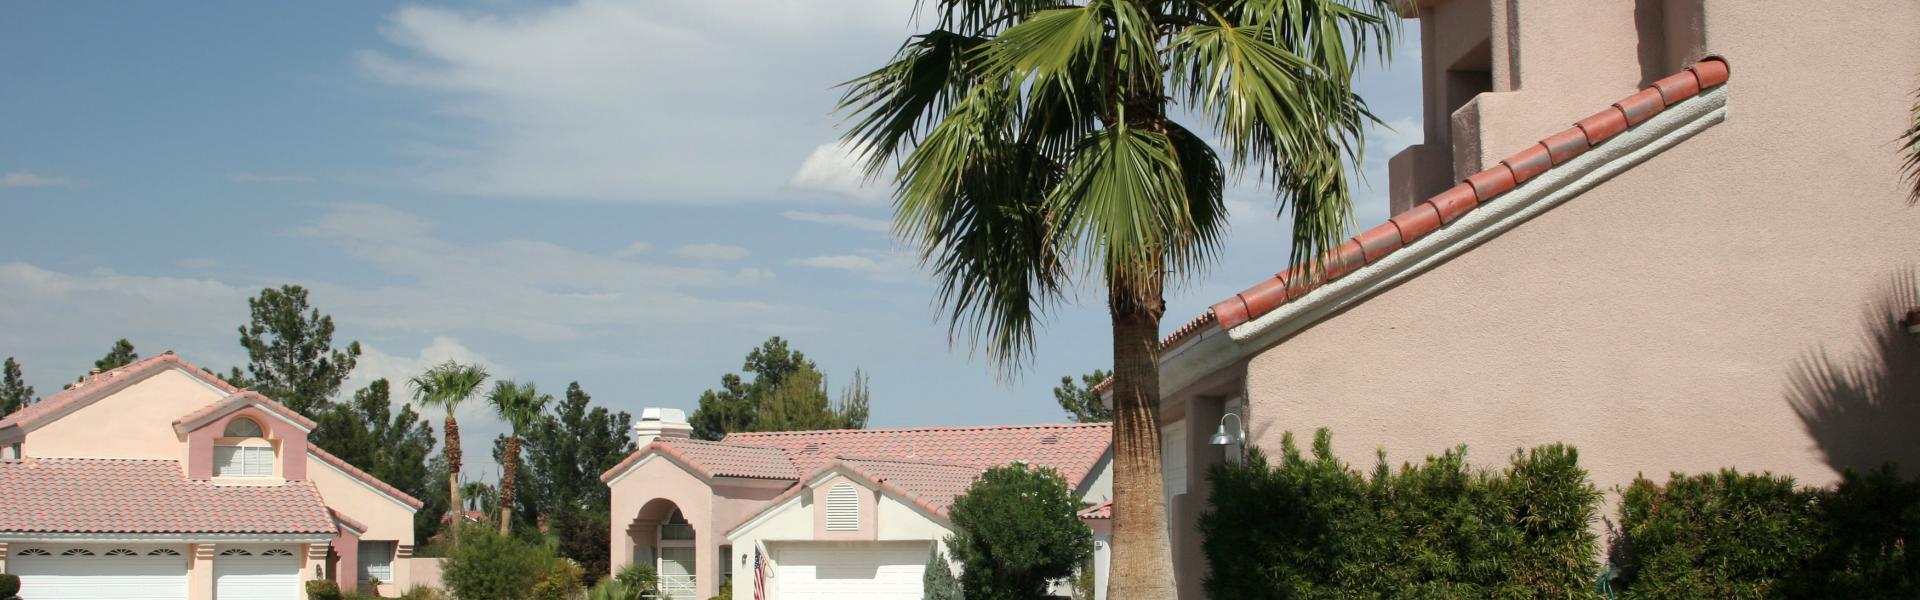 Ferienwohnungen & Ferienhäuser für Urlaub in Nevada - Casamundo